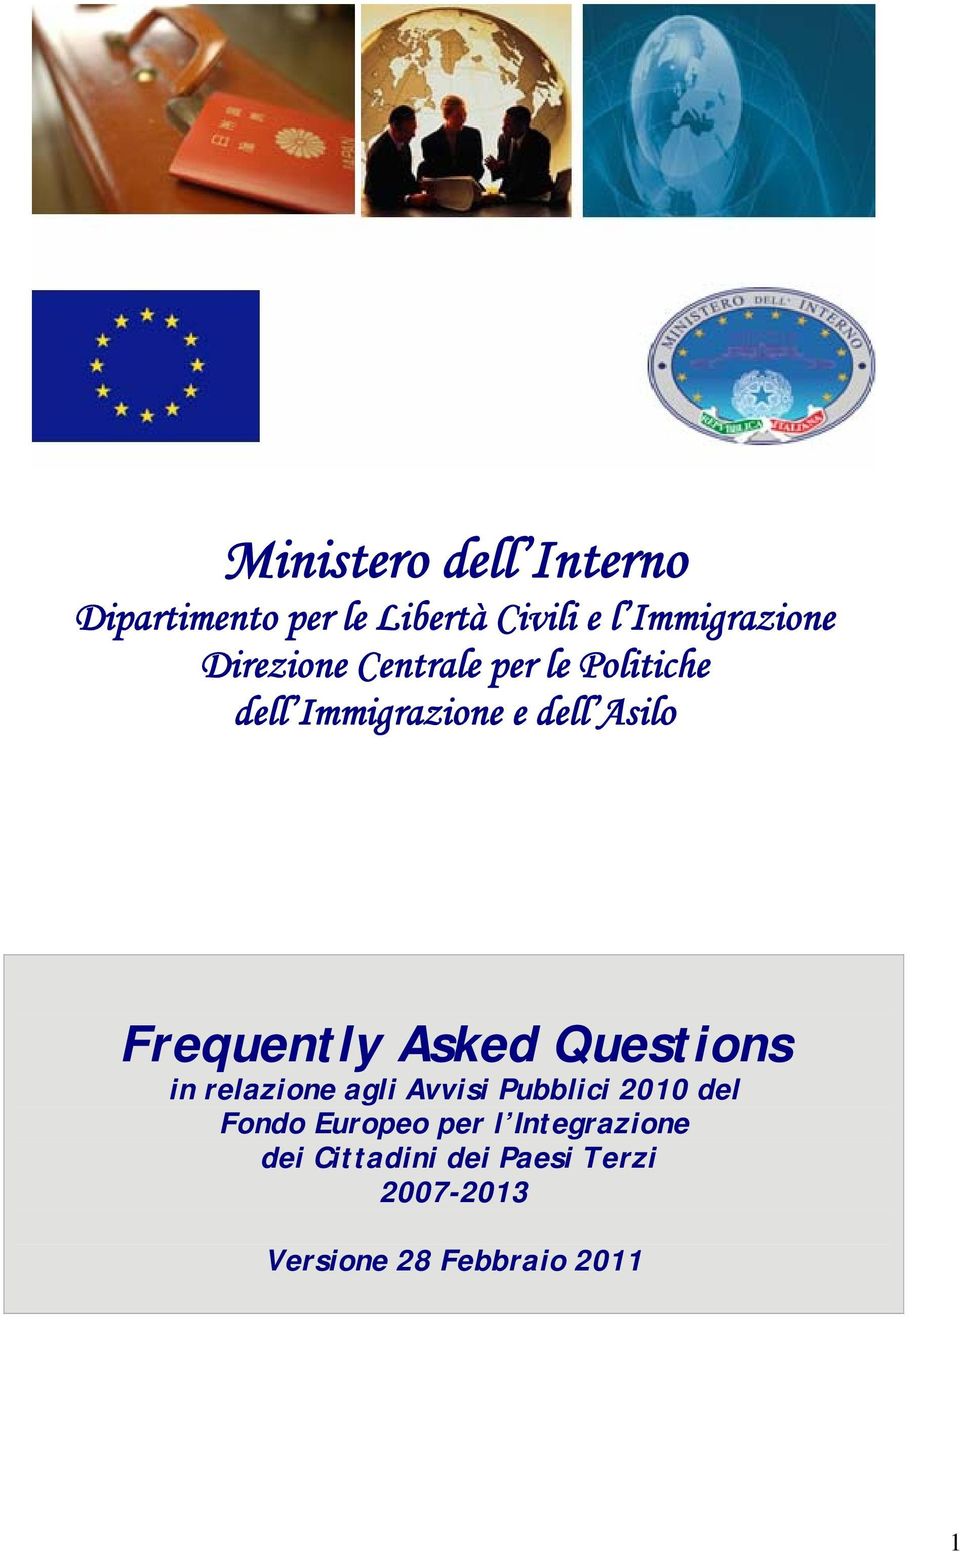 Asked Questions in relazione agli Avvisi Pubblici 2010 del Fondo Europeo per